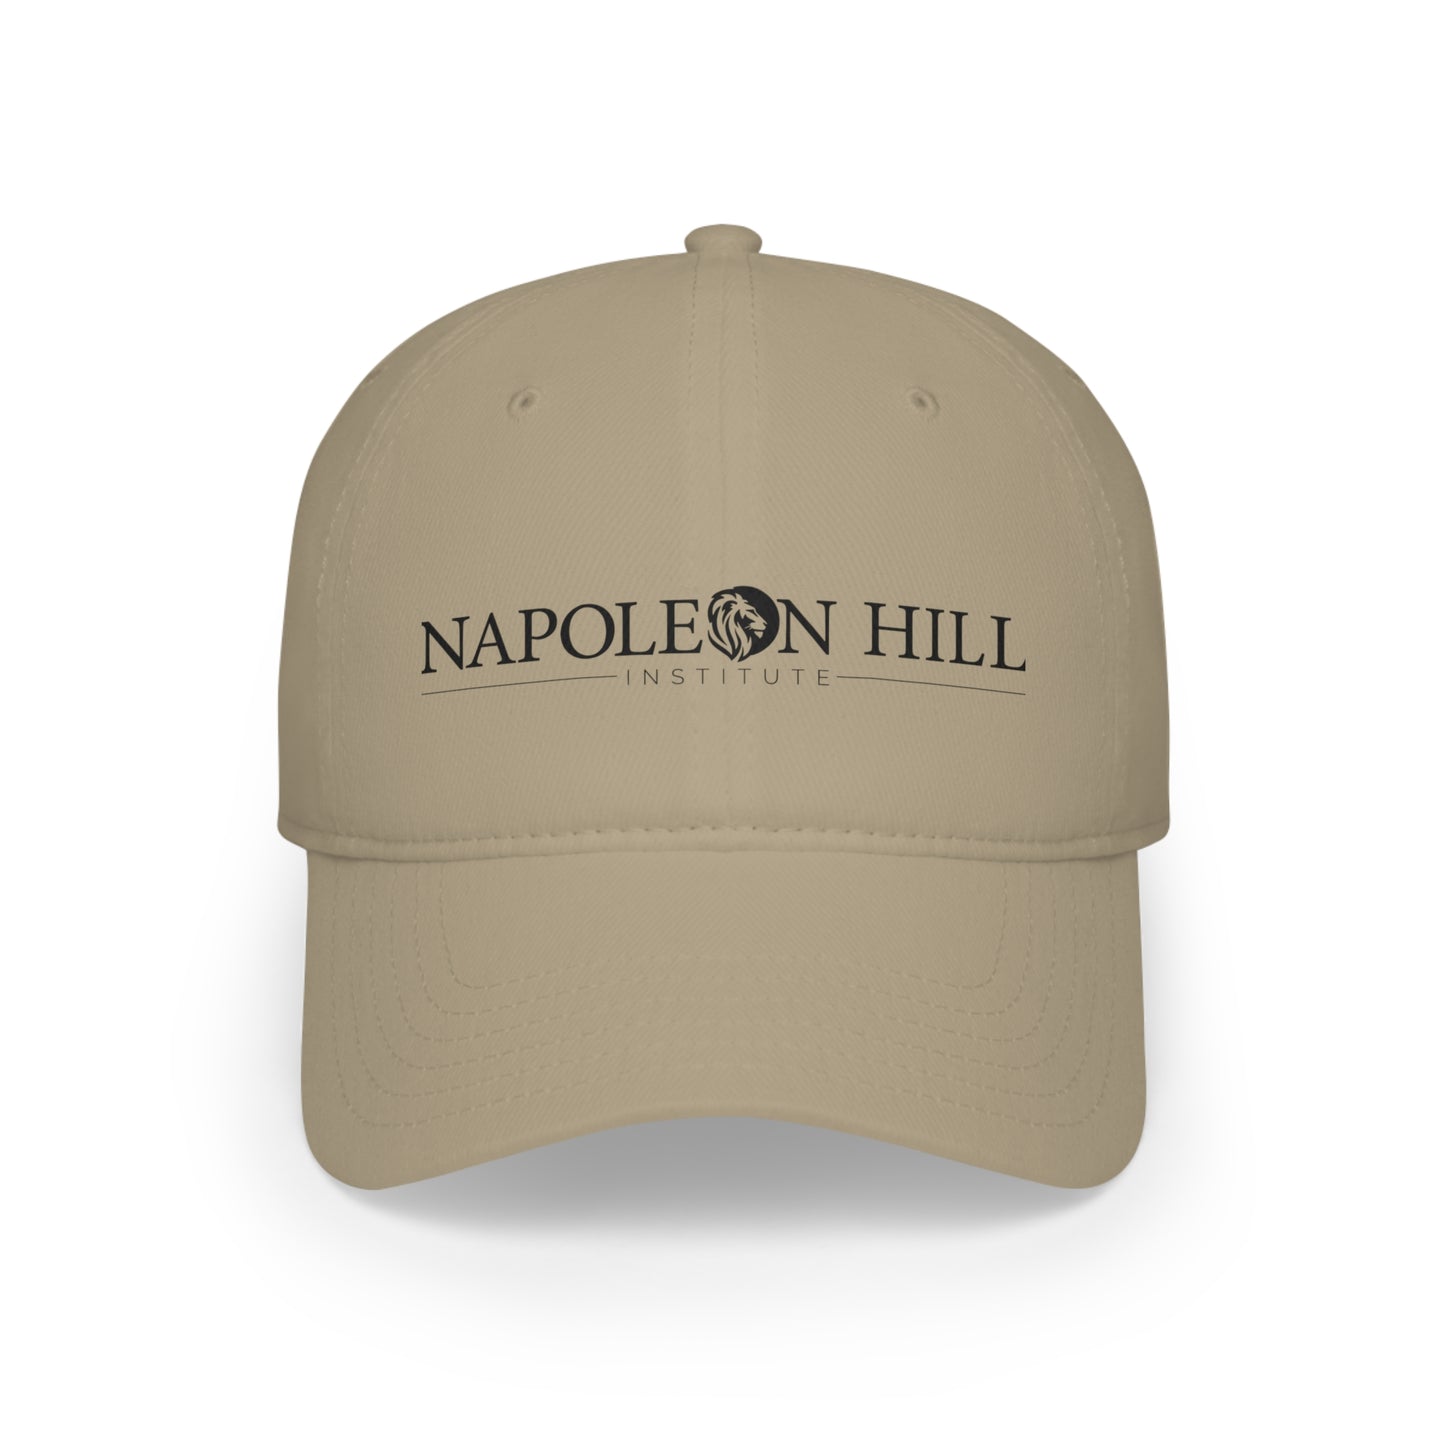 Napoleon Hill Institute Cap